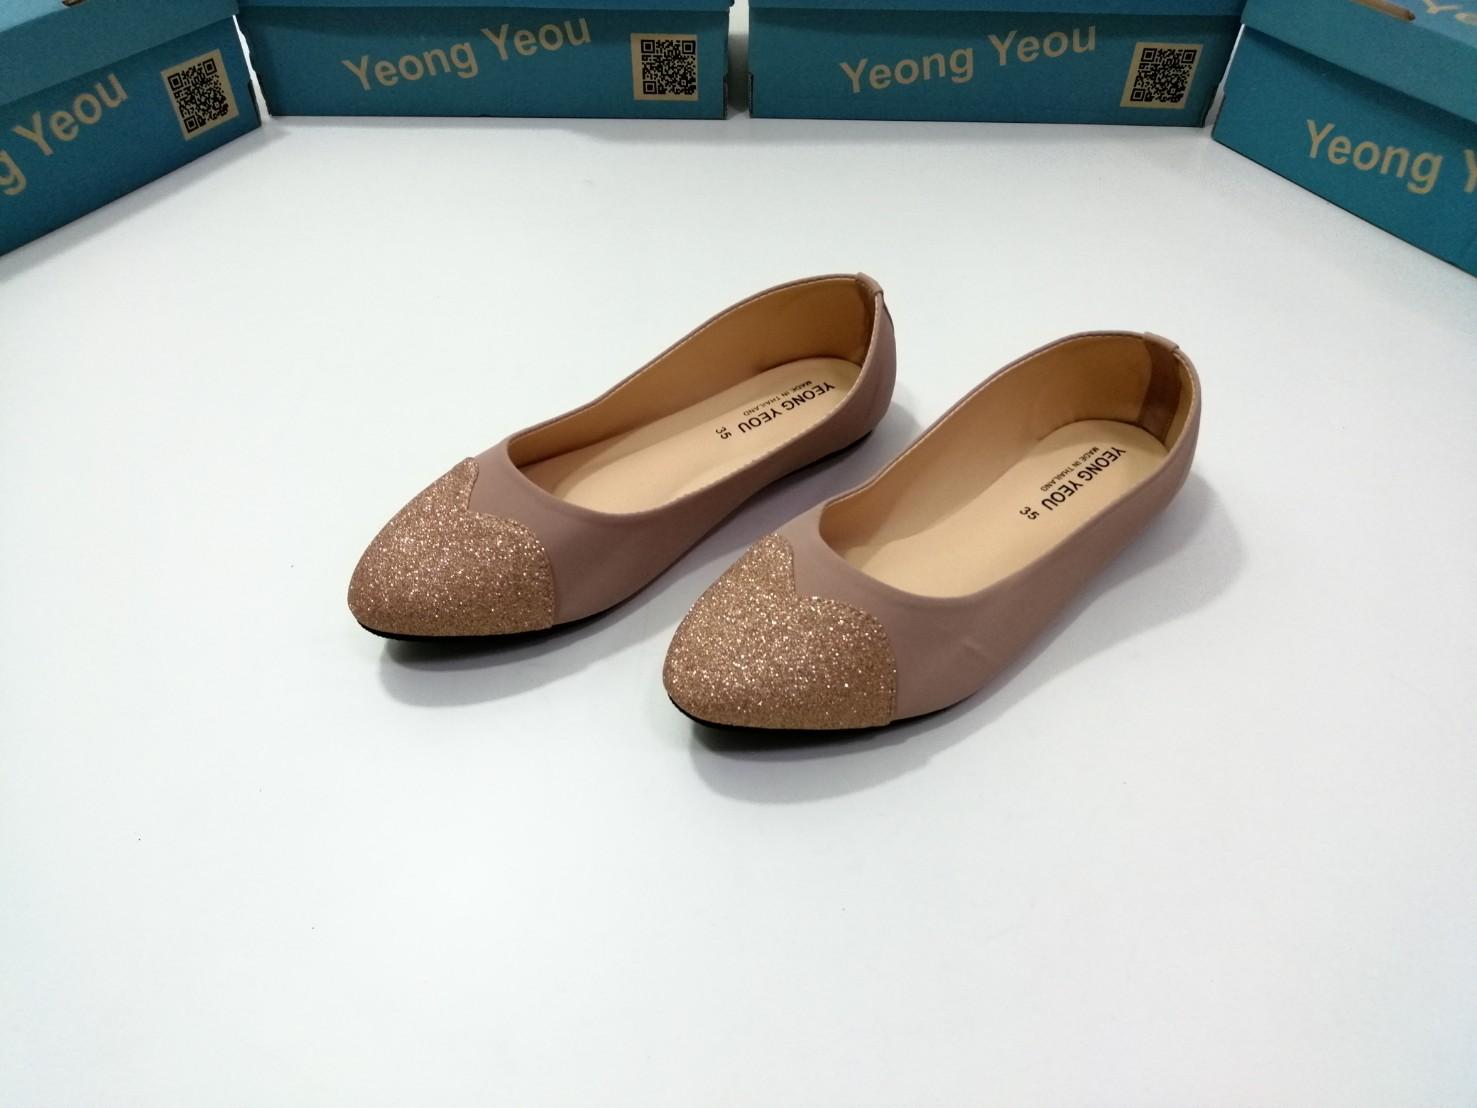 yeong yeou รองเท้าคัทชูหัวแหลมส้นแบนผ้านูบัค รหัสyy708